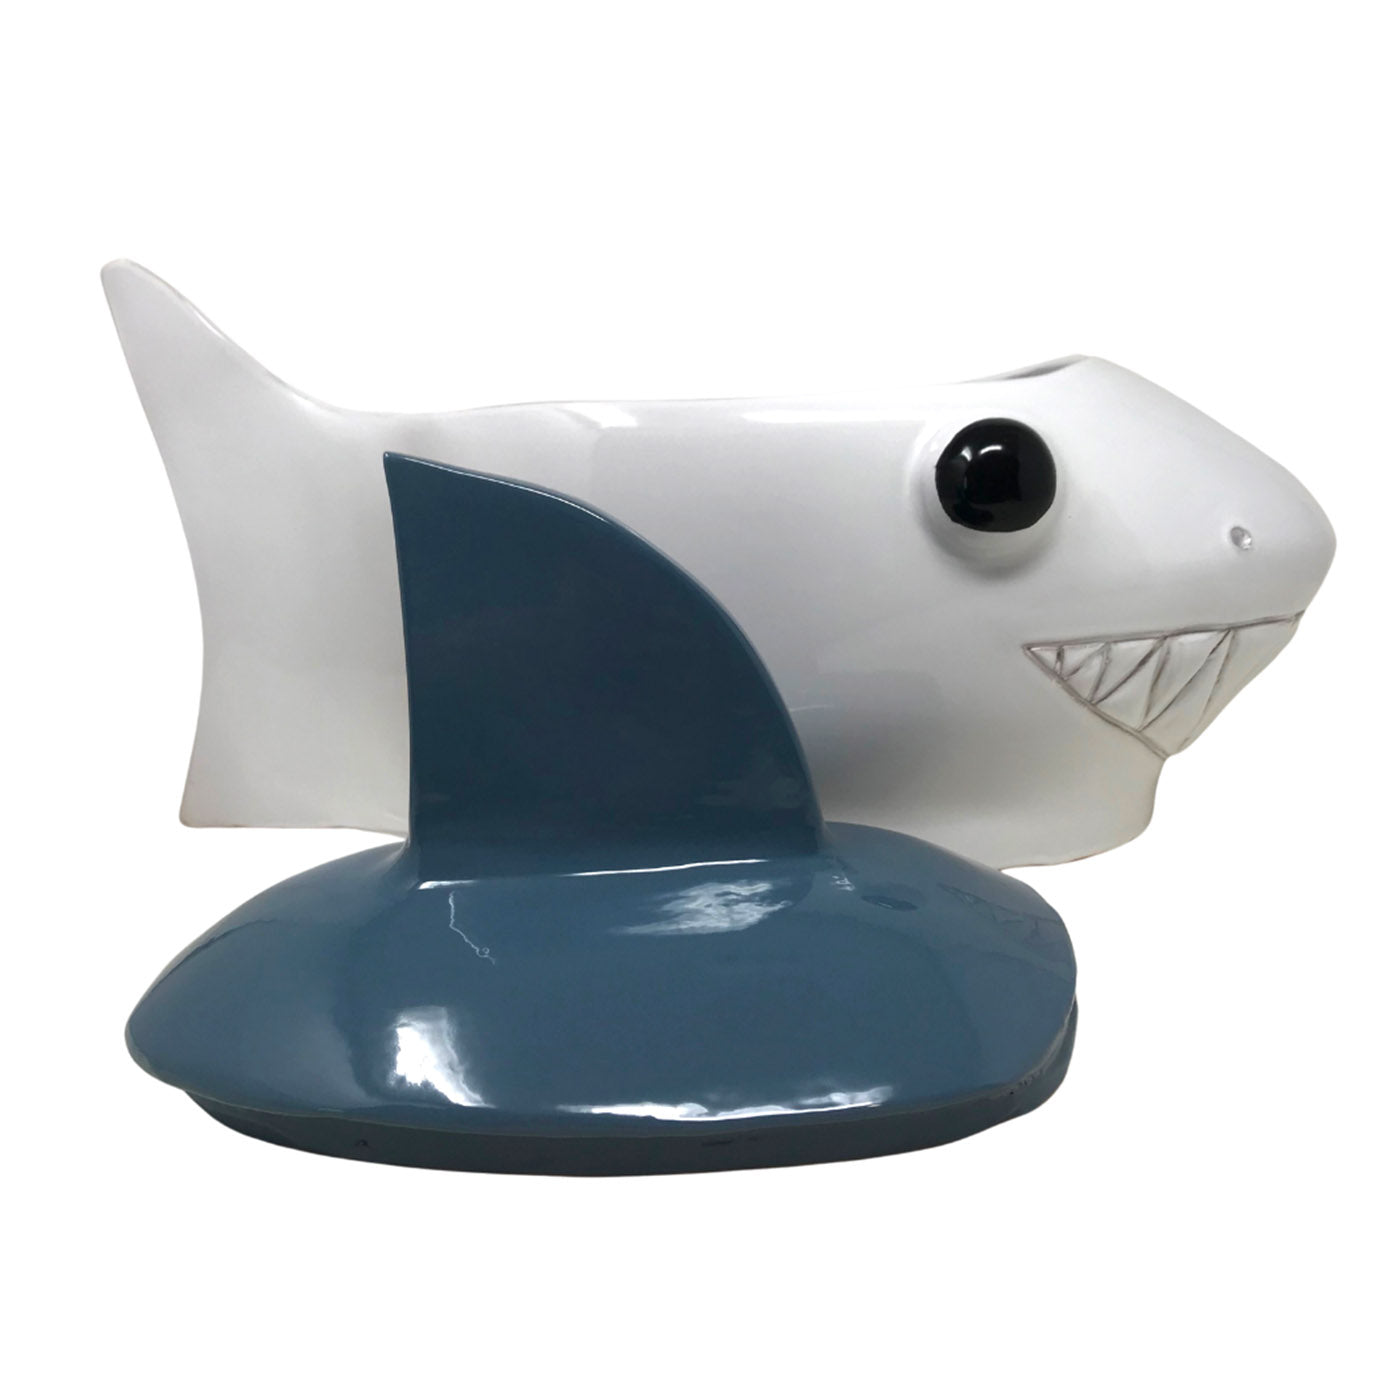 Contenedor grande azul-gris y tiburón blanco con tapa - Vista alternativa 1